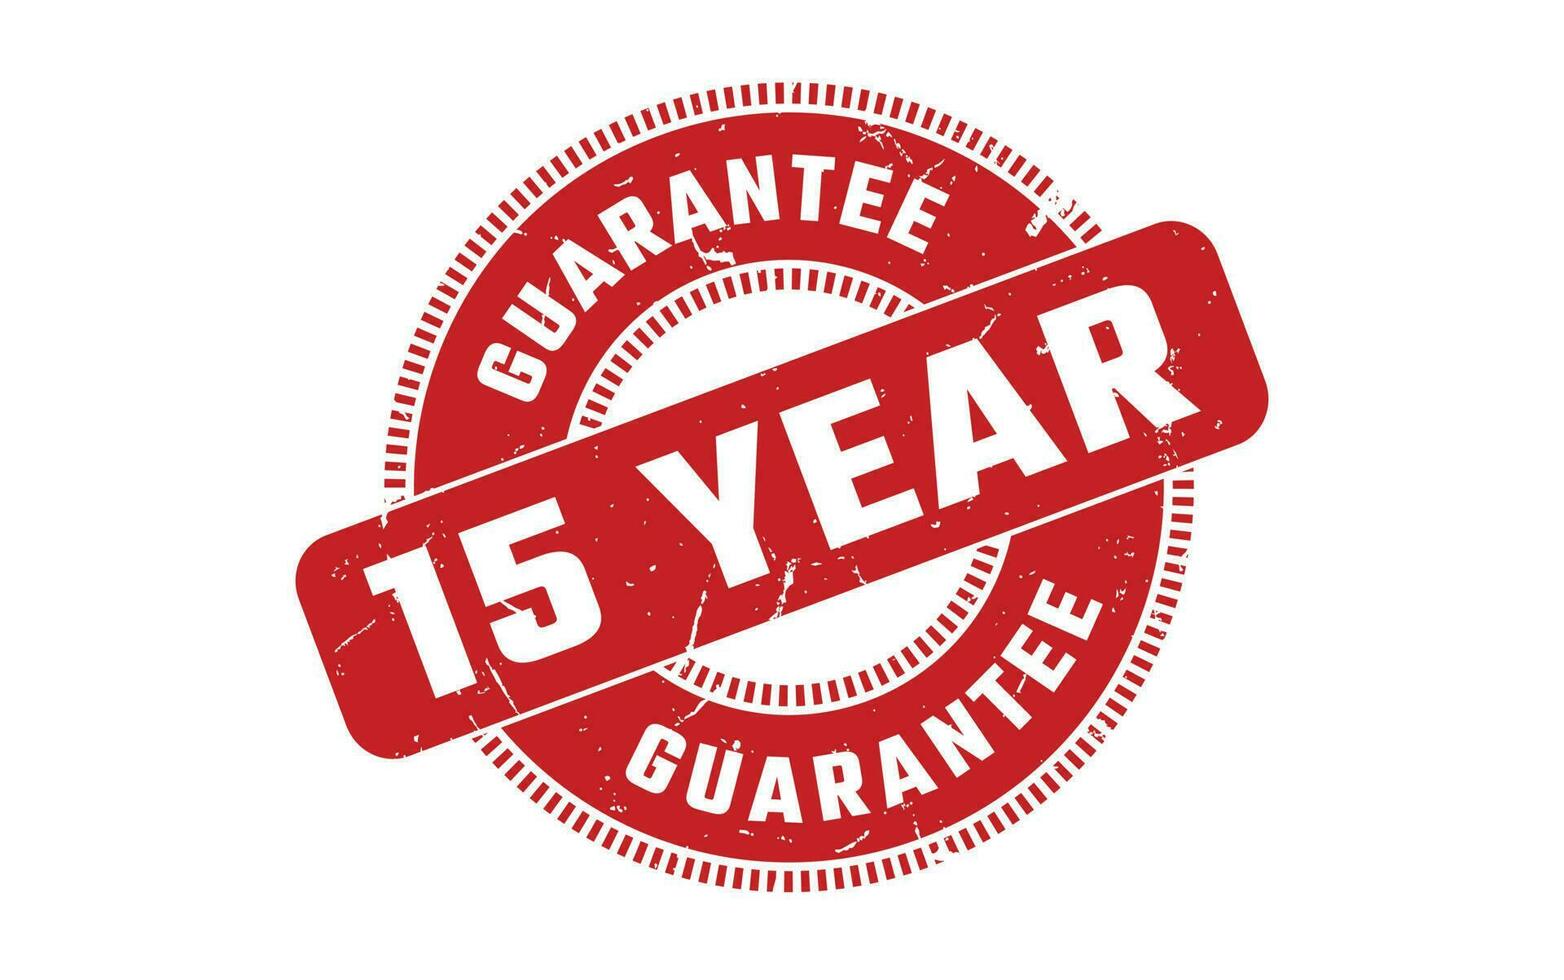 15 Jahr Garantie Gummi Briefmarke vektor